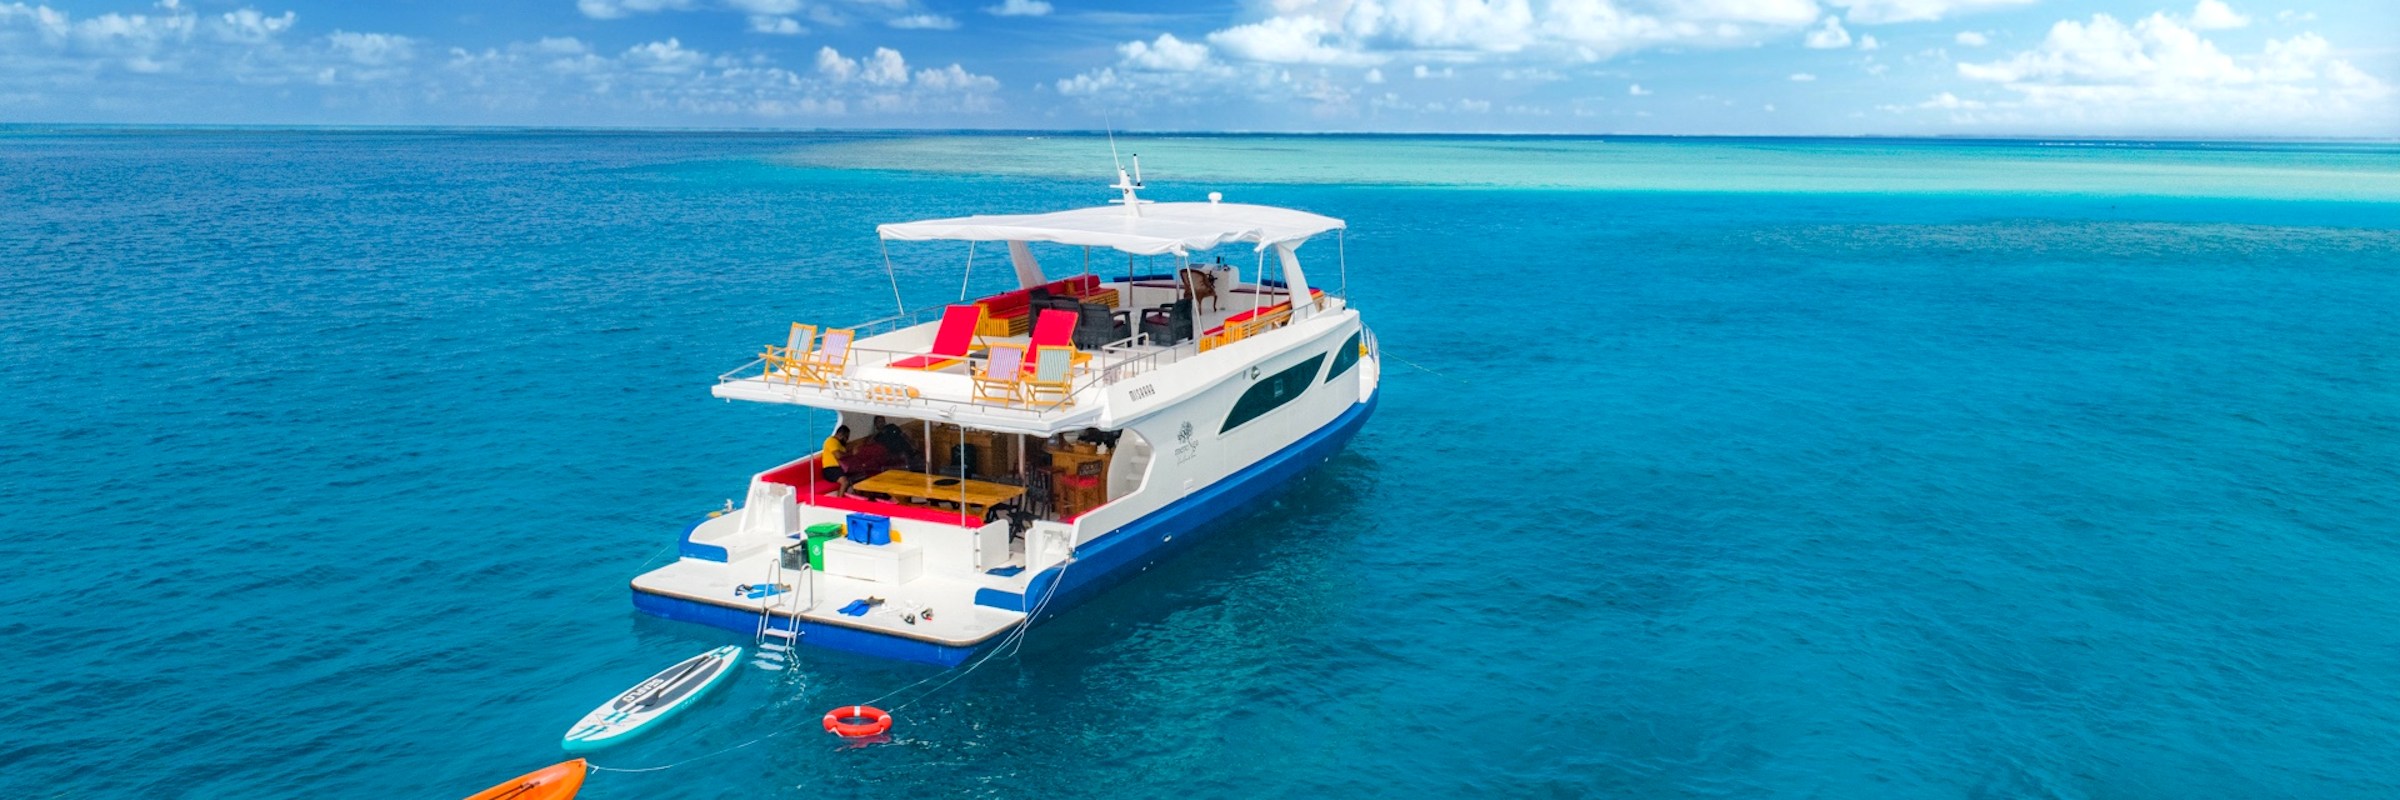 Auf einer Inselsafari an Bord der MV Misraab können Sie ausgiebig die Gewässer der Malediven erkunden.